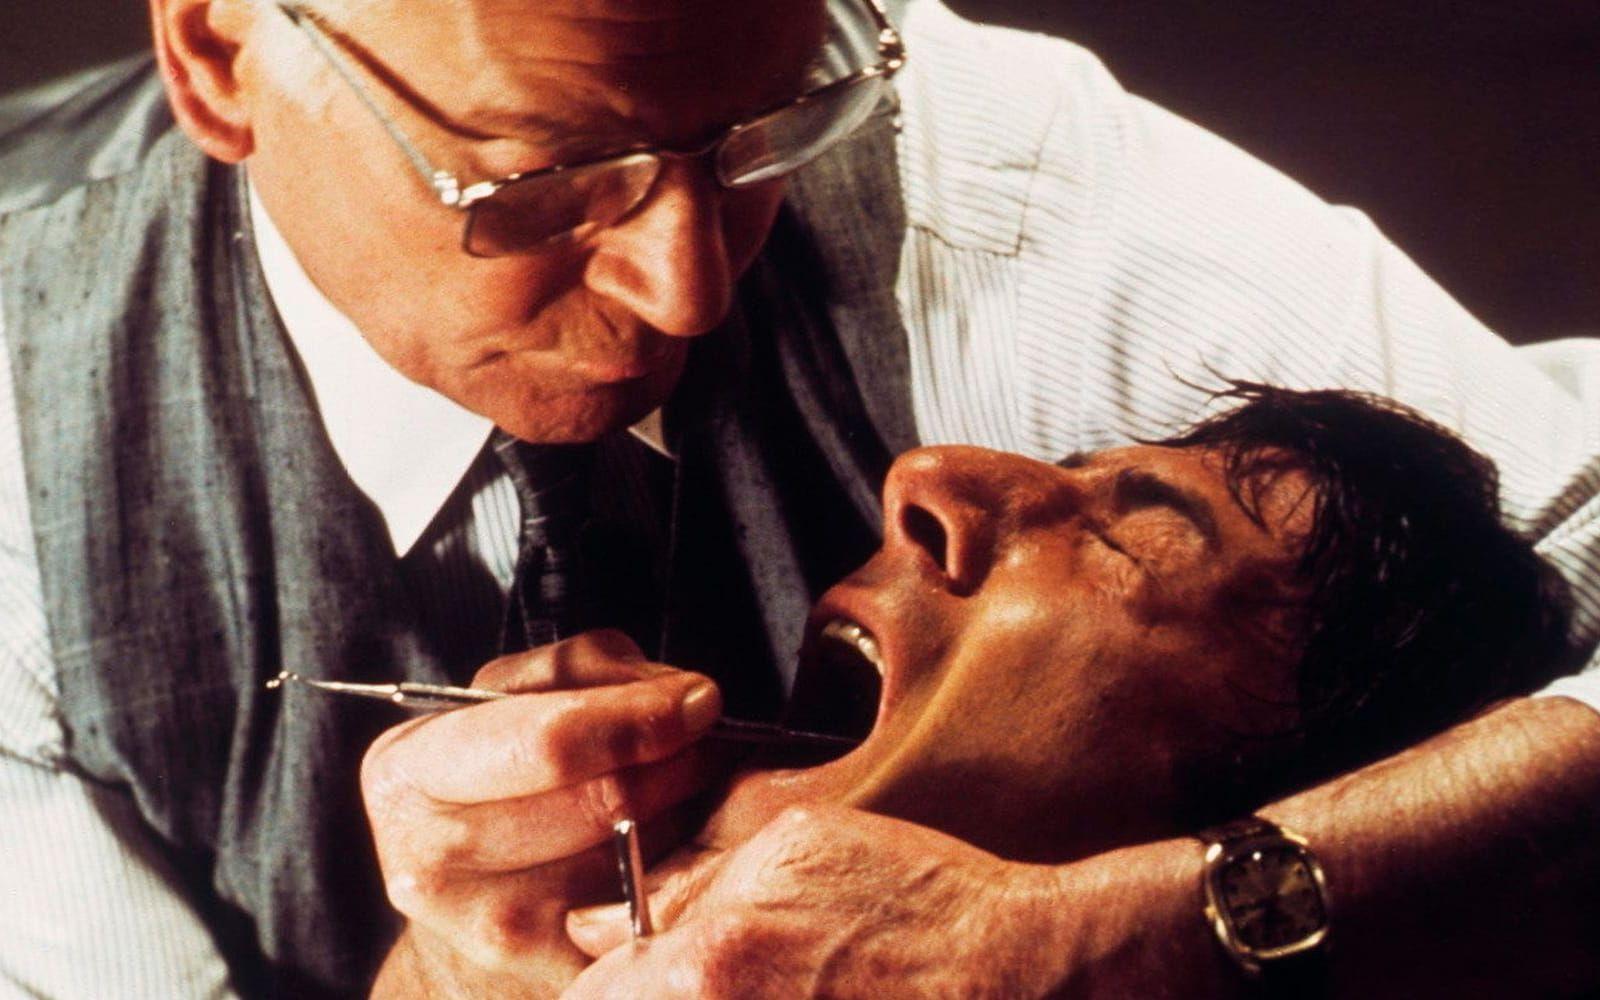 <strong>MARATONMANNEN (1976):</strong> Ingen gillar att gå till tandläkaren och Maratonmannen, med Dustin Hoffman i huvudrollen, gjorde det knappast roligare. För många blev det synonymt med tortyr. I filmen finner sig Hoffmans rollfigur fastbunden i en tandläkarstol och blir torterad av en sadistisk nazi-tandläkare. Scenen är inte särskilt grafisk, och det behövs heller inte. Ljudet av en borr och kameran som panorerar ut säger allt... Cirka fem procent av alla vuxna svenskar <a href="https://www.1177.se/Fakta-och-rad/Sjukdomar/Tandvardsradsla-hos-vuxna/">uppges</a> lida av tandläkarfobi.